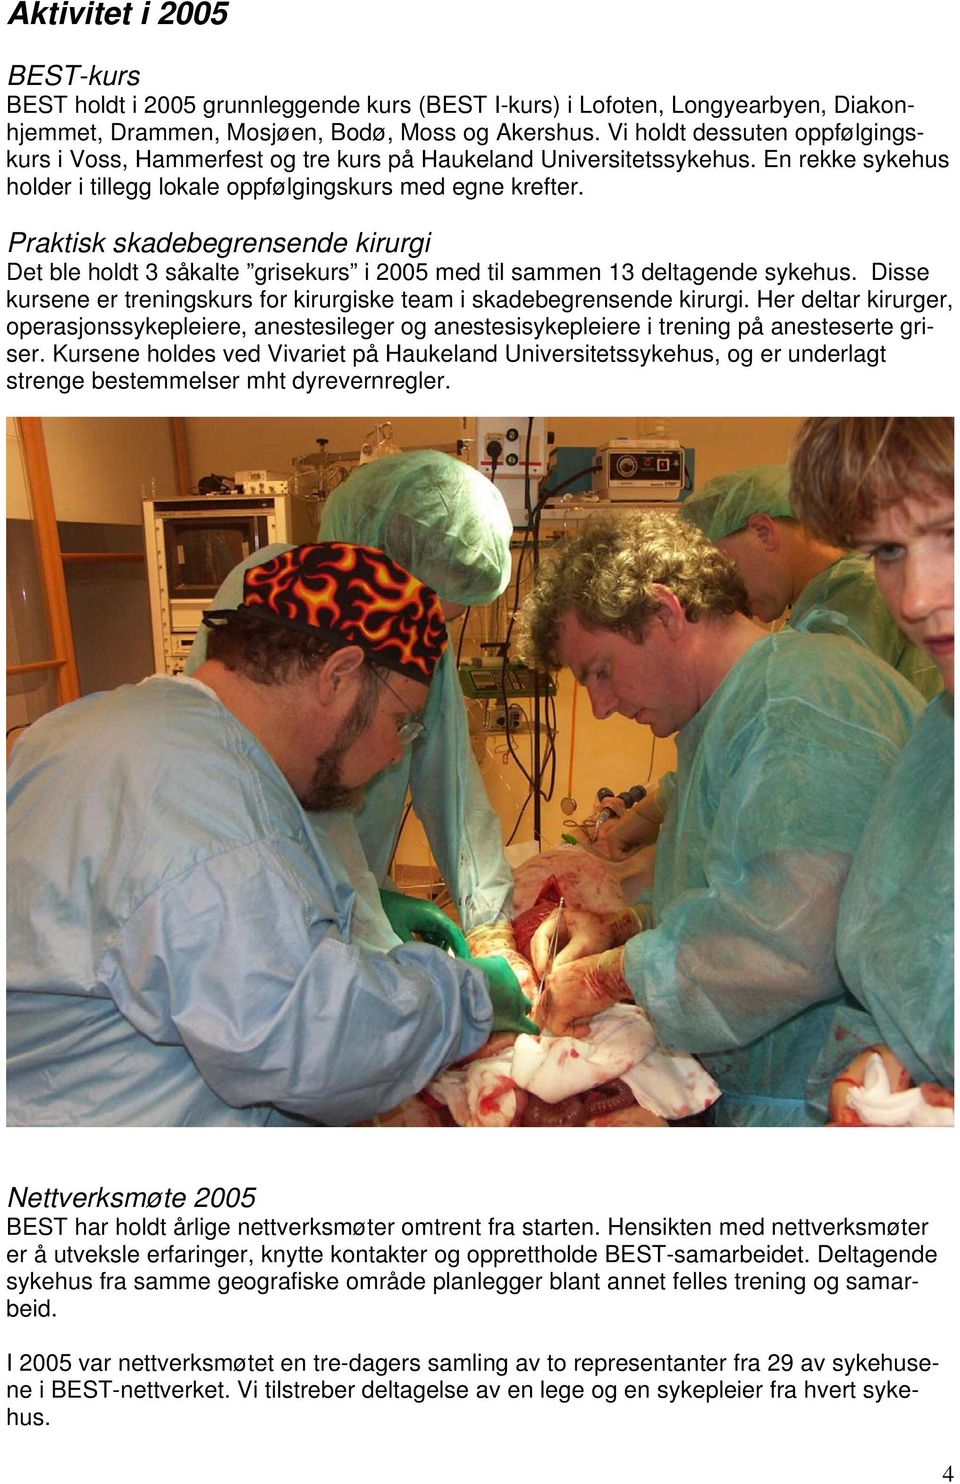 Praktisk skadebegrensende kirurgi Det ble holdt 3 såkalte grisekurs i 2005 med til sammen 13 deltagende sykehus. Disse kursene er treningskurs for kirurgiske team i skadebegrensende kirurgi.